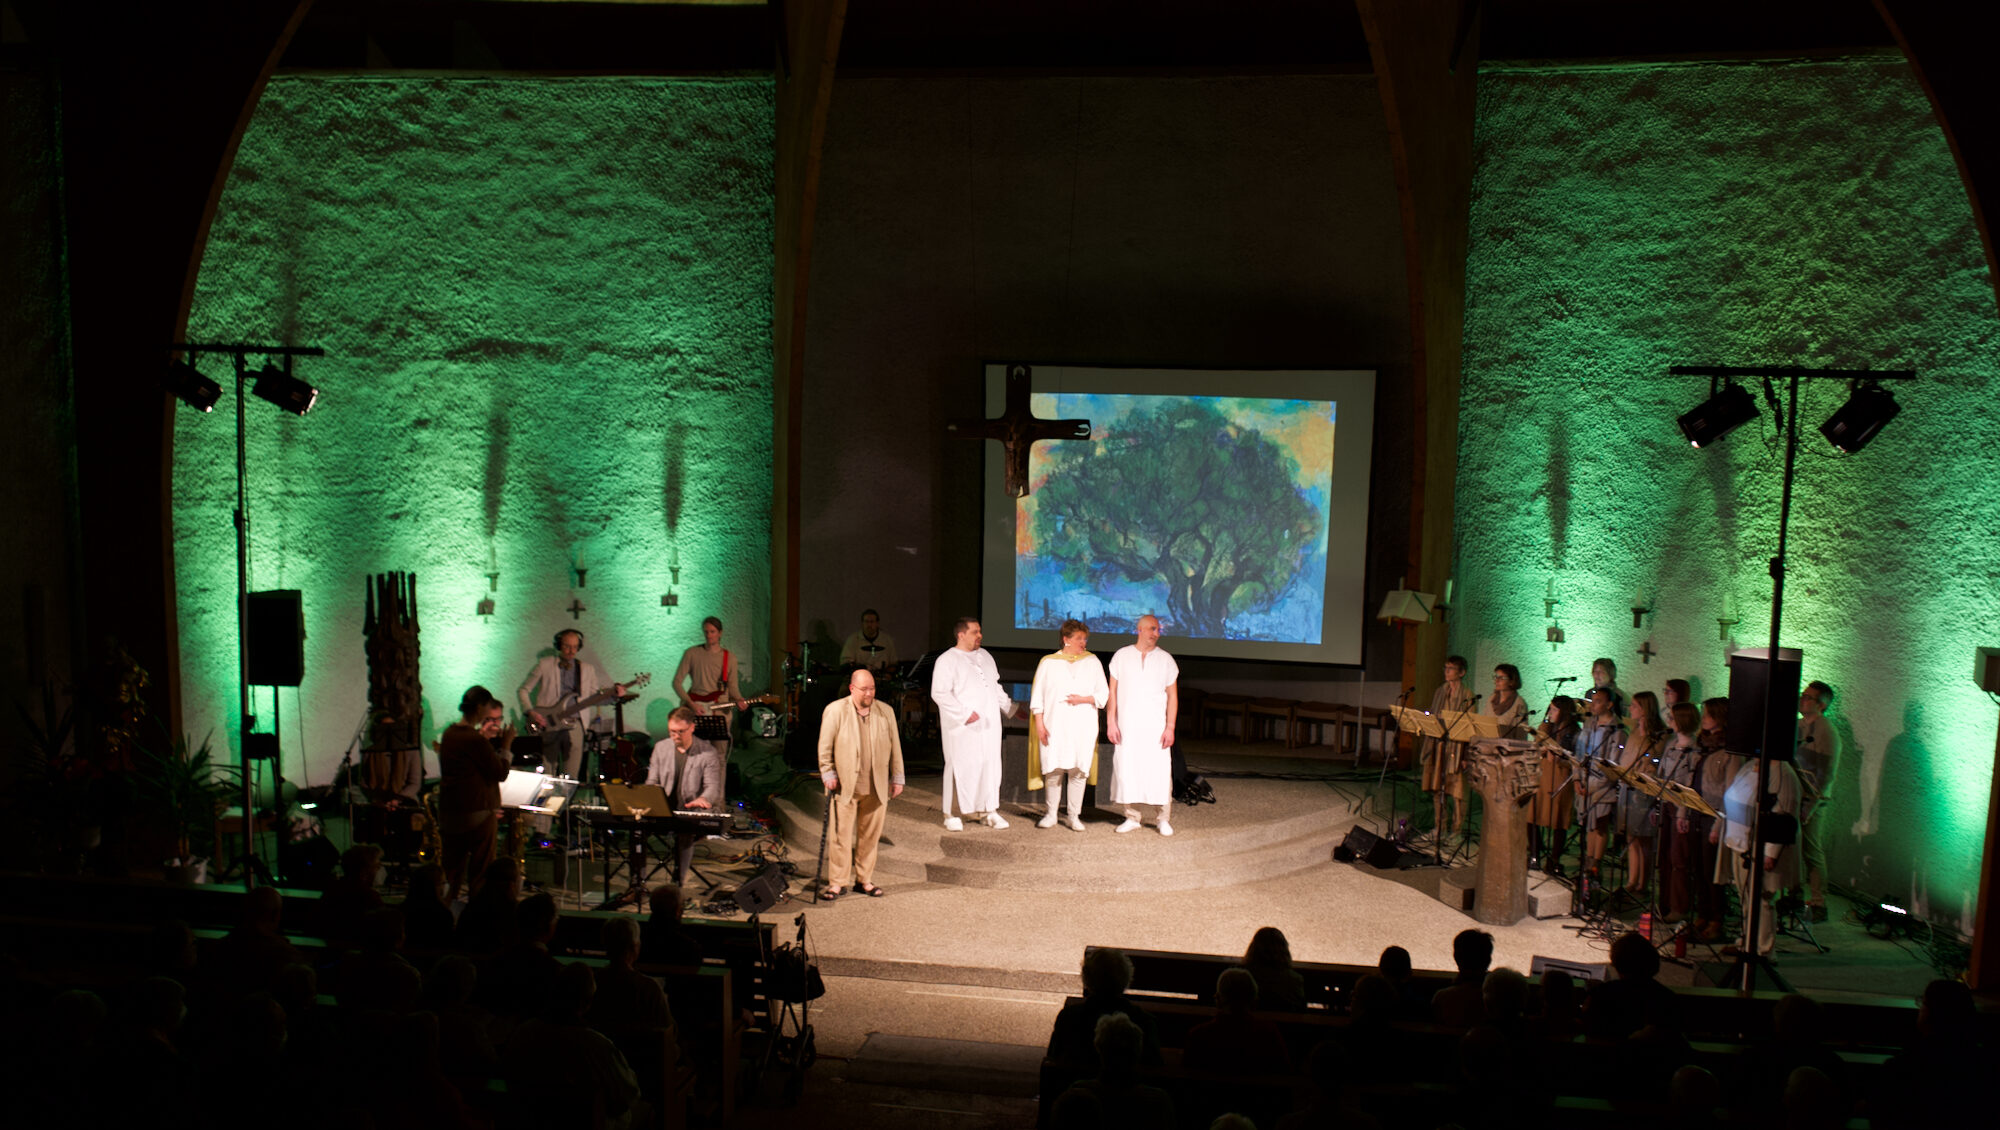 Kirchenraum grün illuminiert, Bild mit Baum im Hintergrund, davor 3 weiß gekleidete Männer, davor ein alter Mann, umrundet ist die Szene von Chor und Orchester